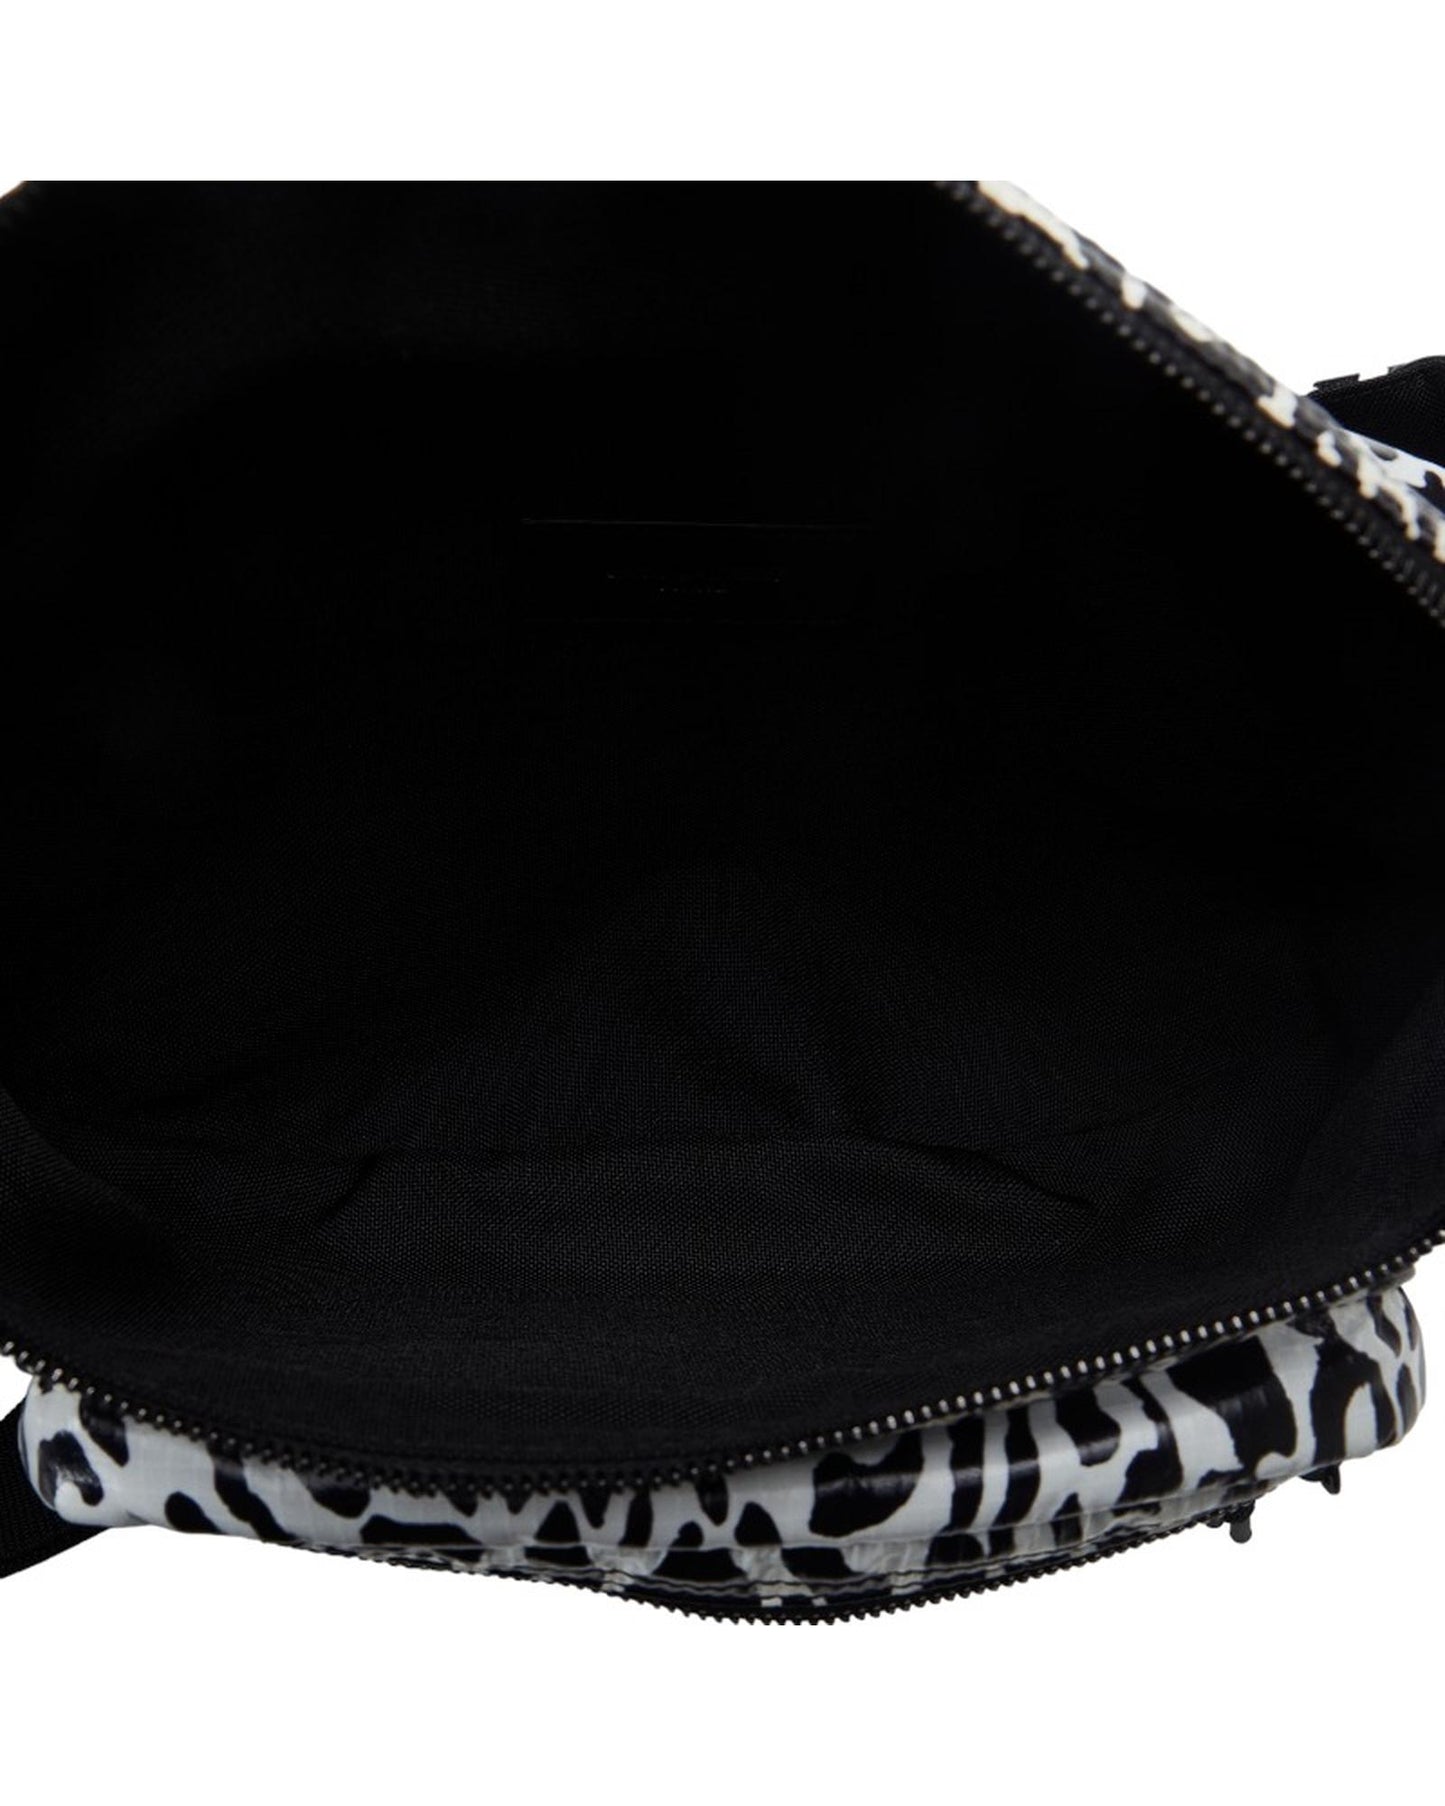 Yves Saint Laurent Women's Printed Nylon Waist Bag by Yves Saint Laurent in Black